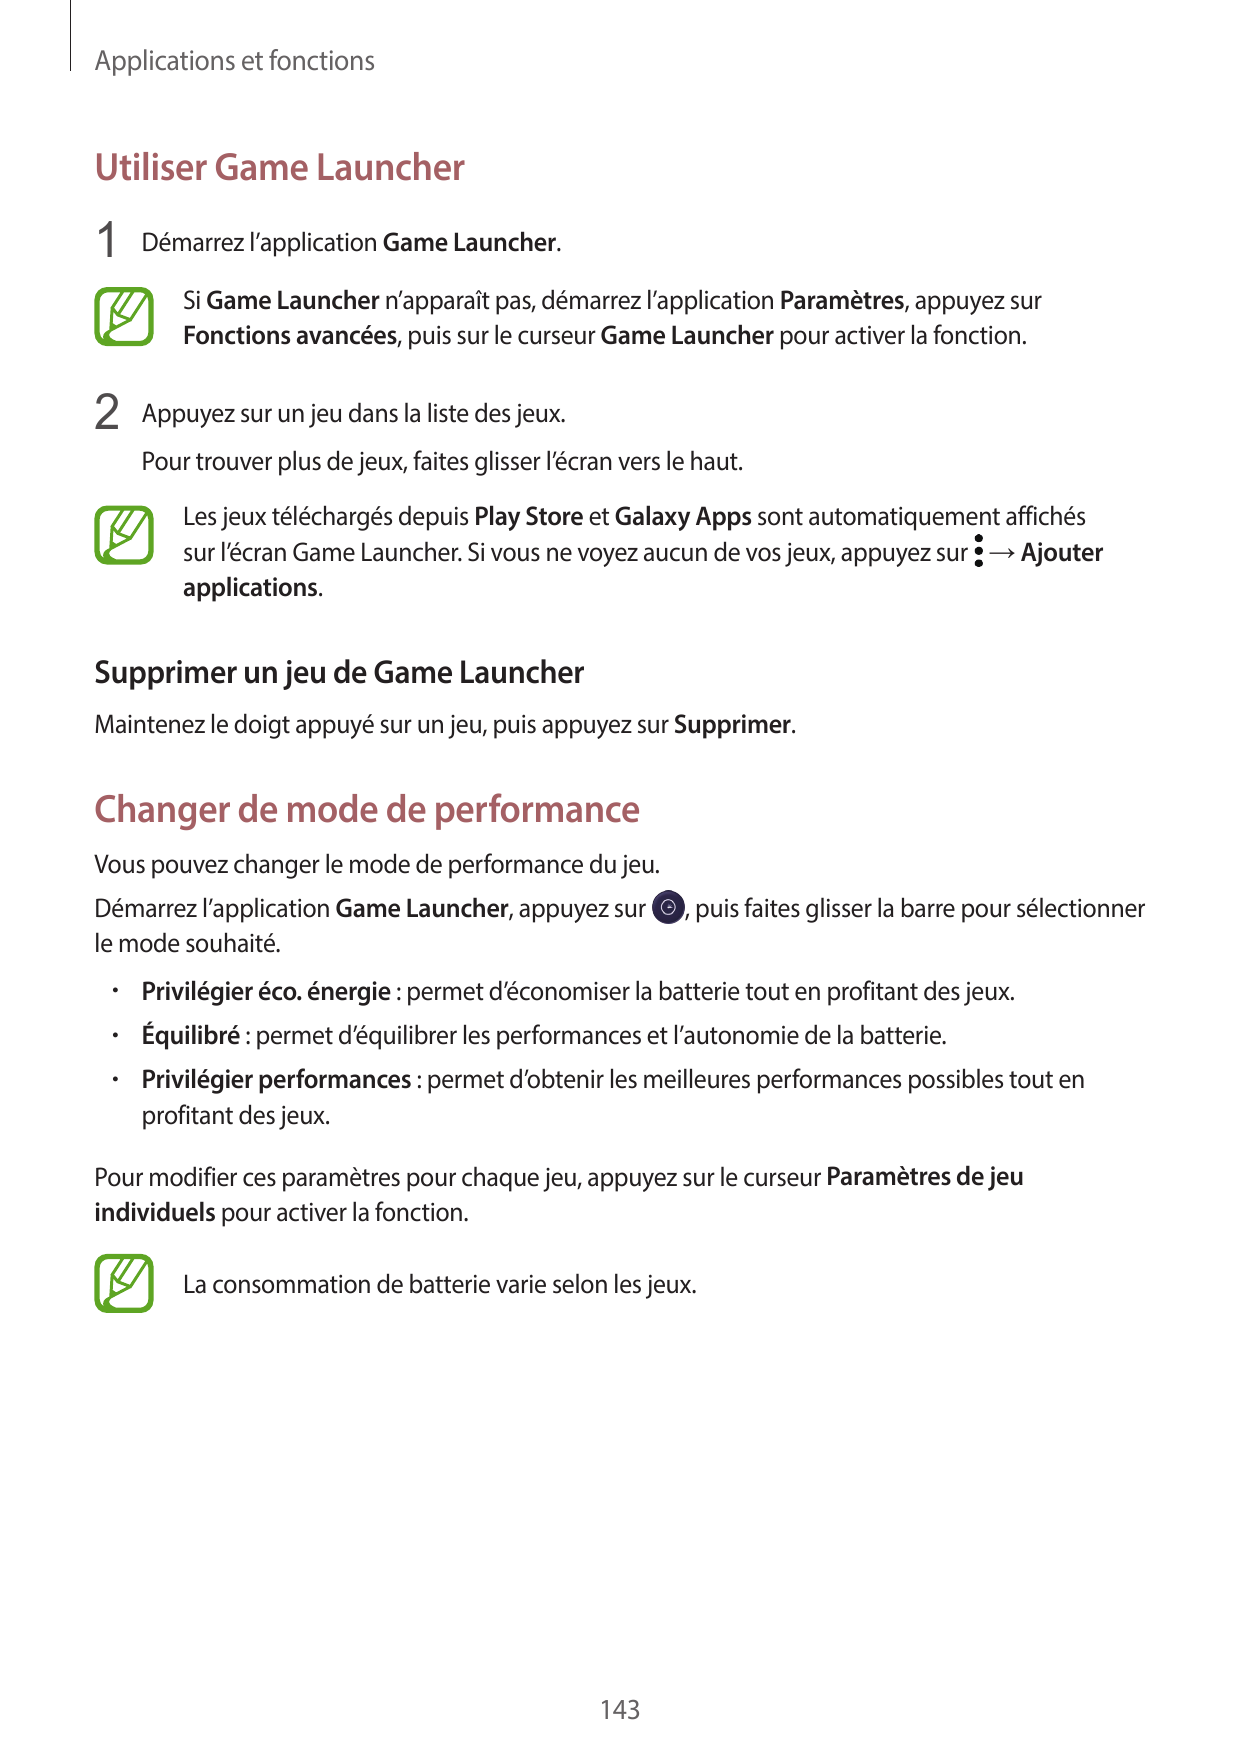 Applications et fonctionsUtiliser Game Launcher1 Démarrez l’application Game Launcher.Si Game Launcher n’apparaît pas, démarrez 